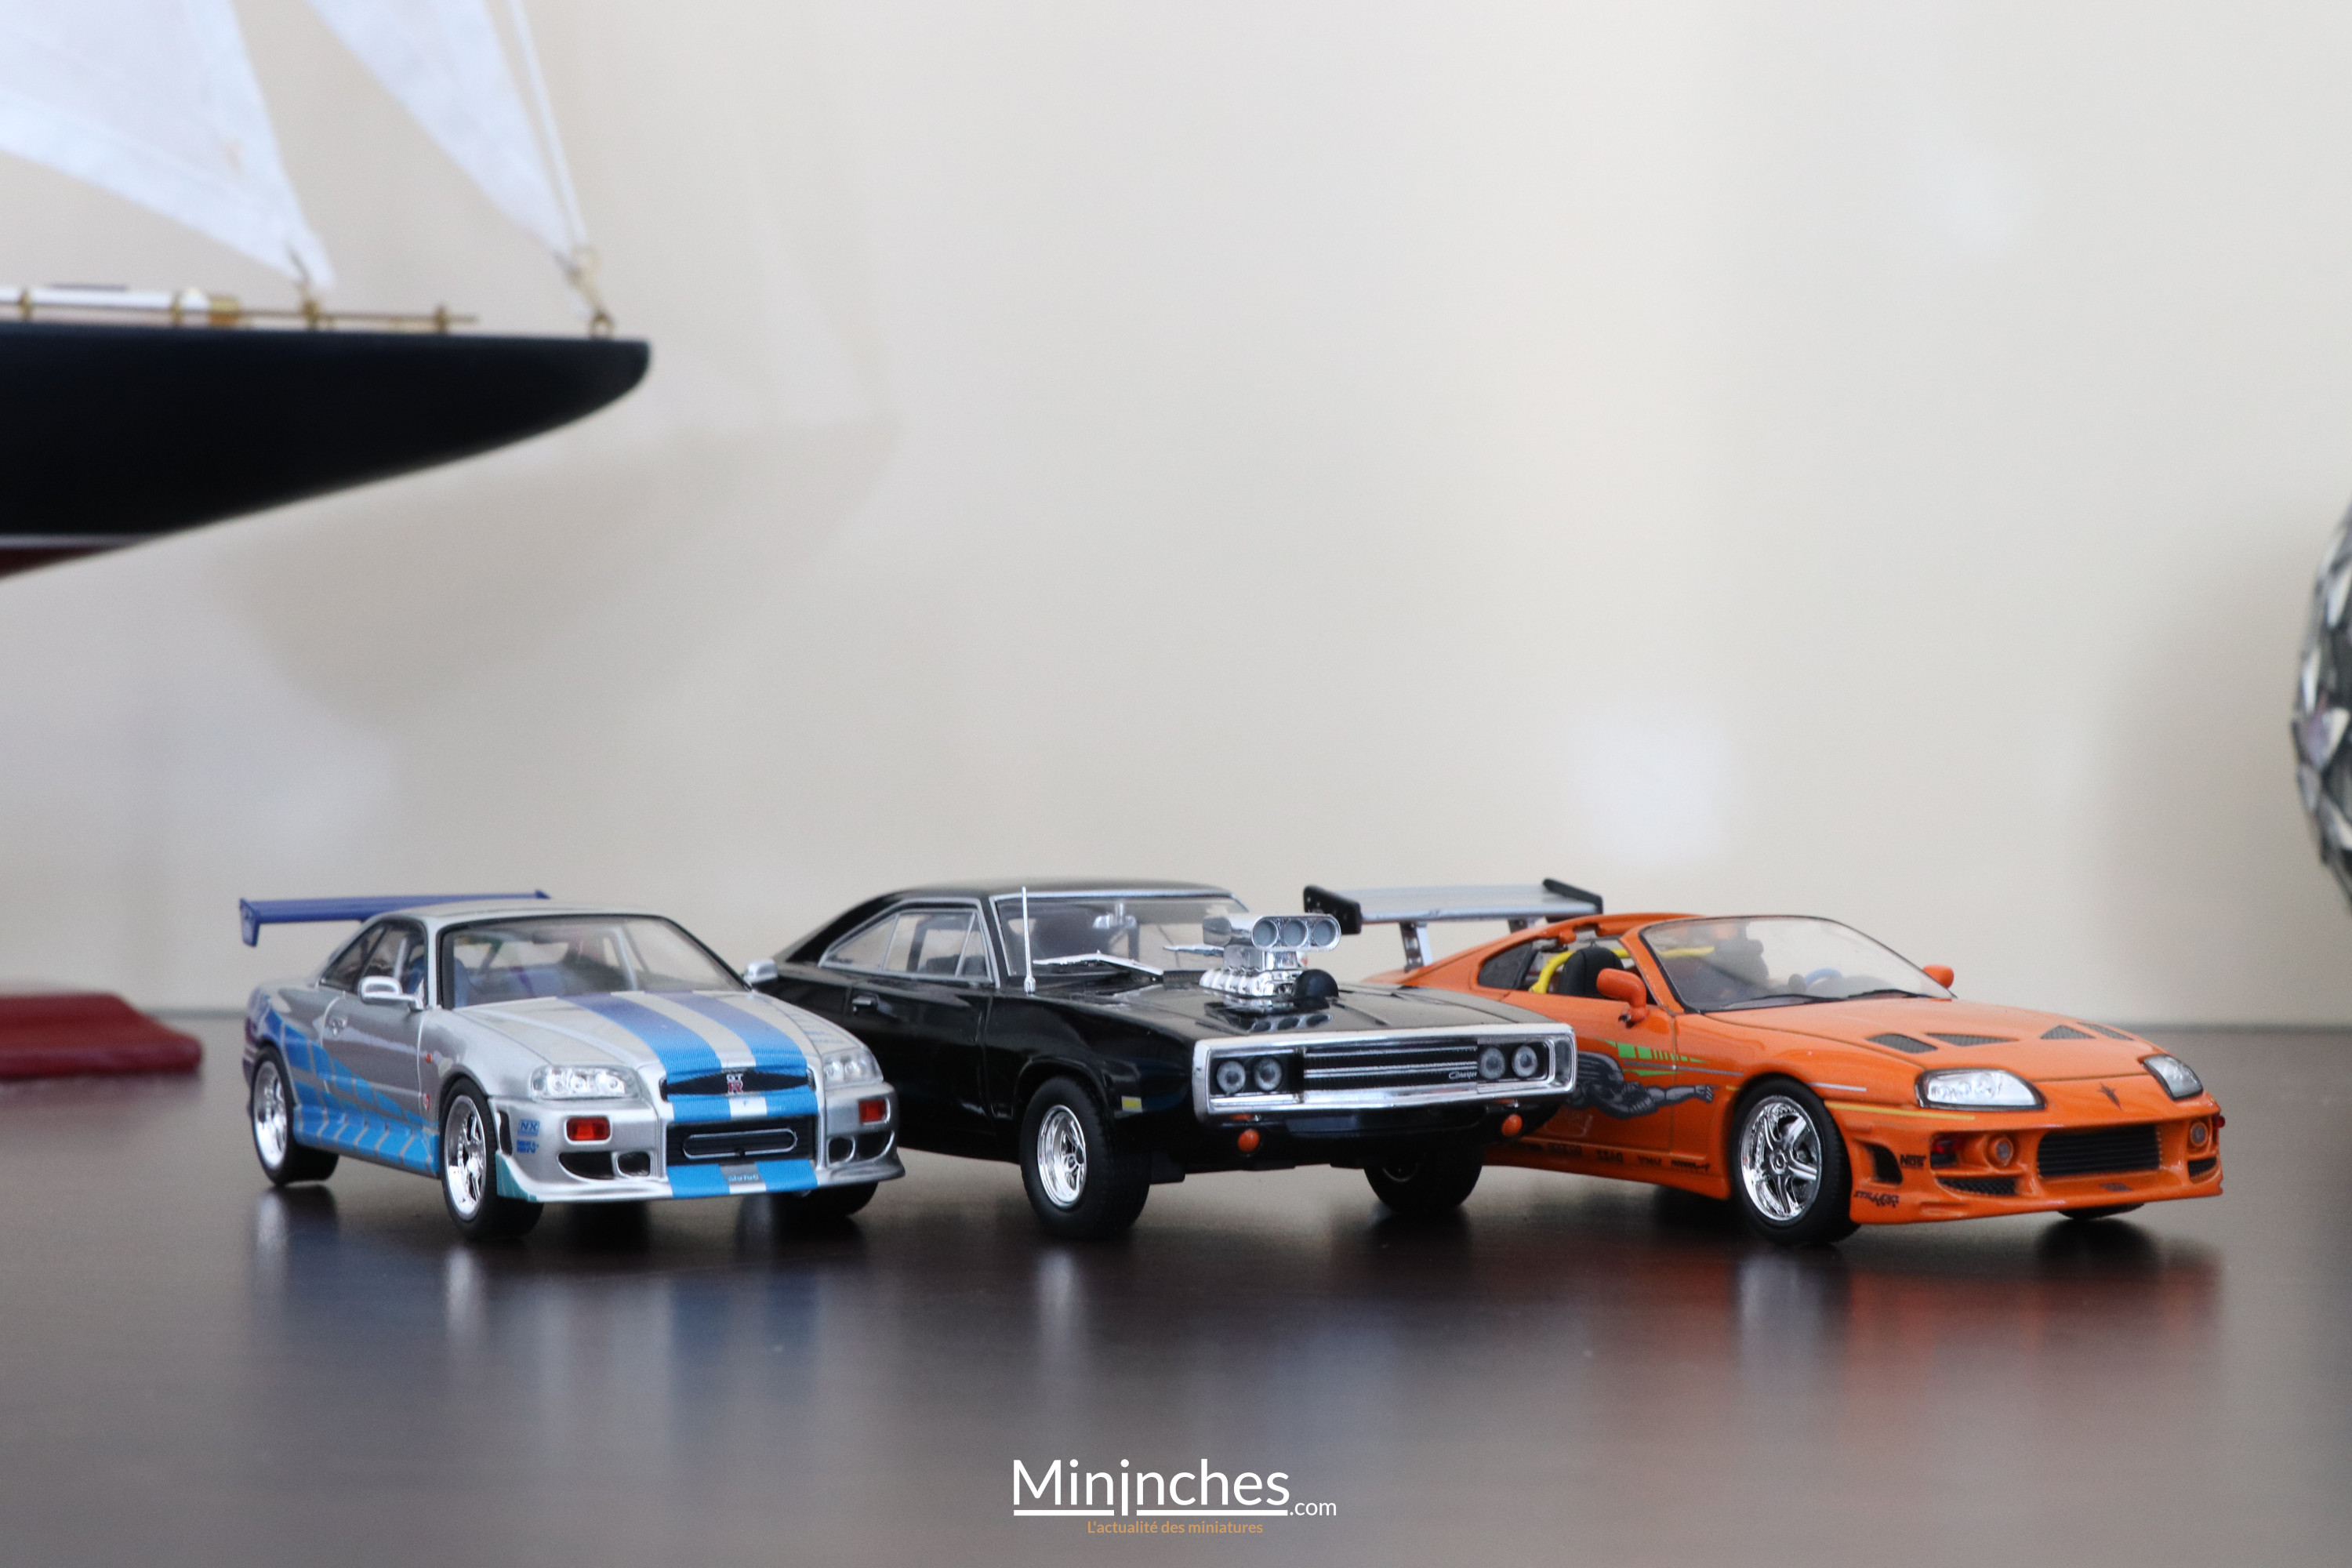 CK-Modelcars - The Fast and the Furious. Modèles de voitures Originaux